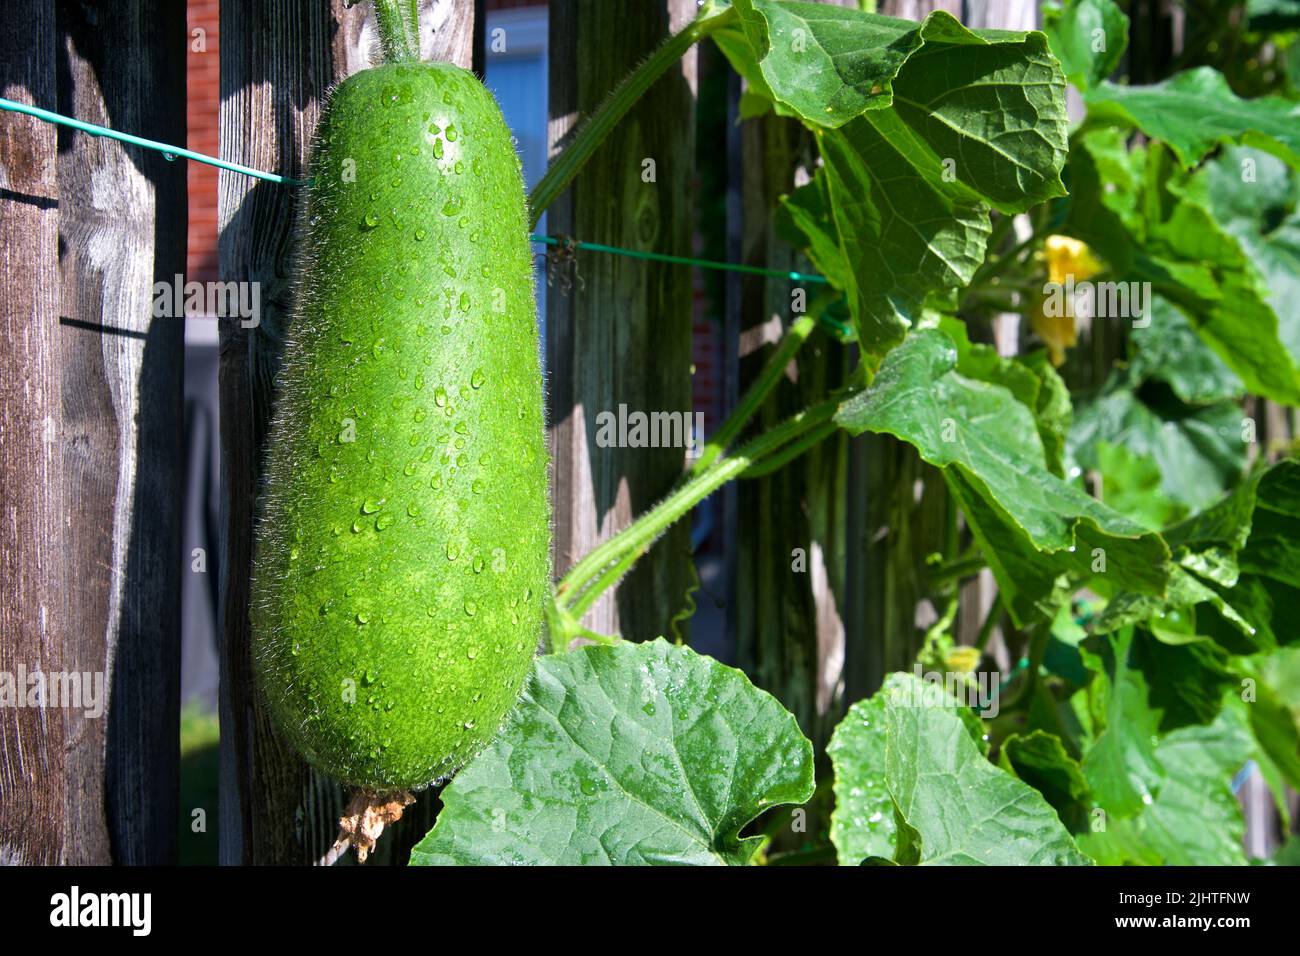 Melon flou organique grimpant la clôture, partie d'un projet de jardinage urbain, vu lors d'une journée ensoleillée d'été Banque D'Images